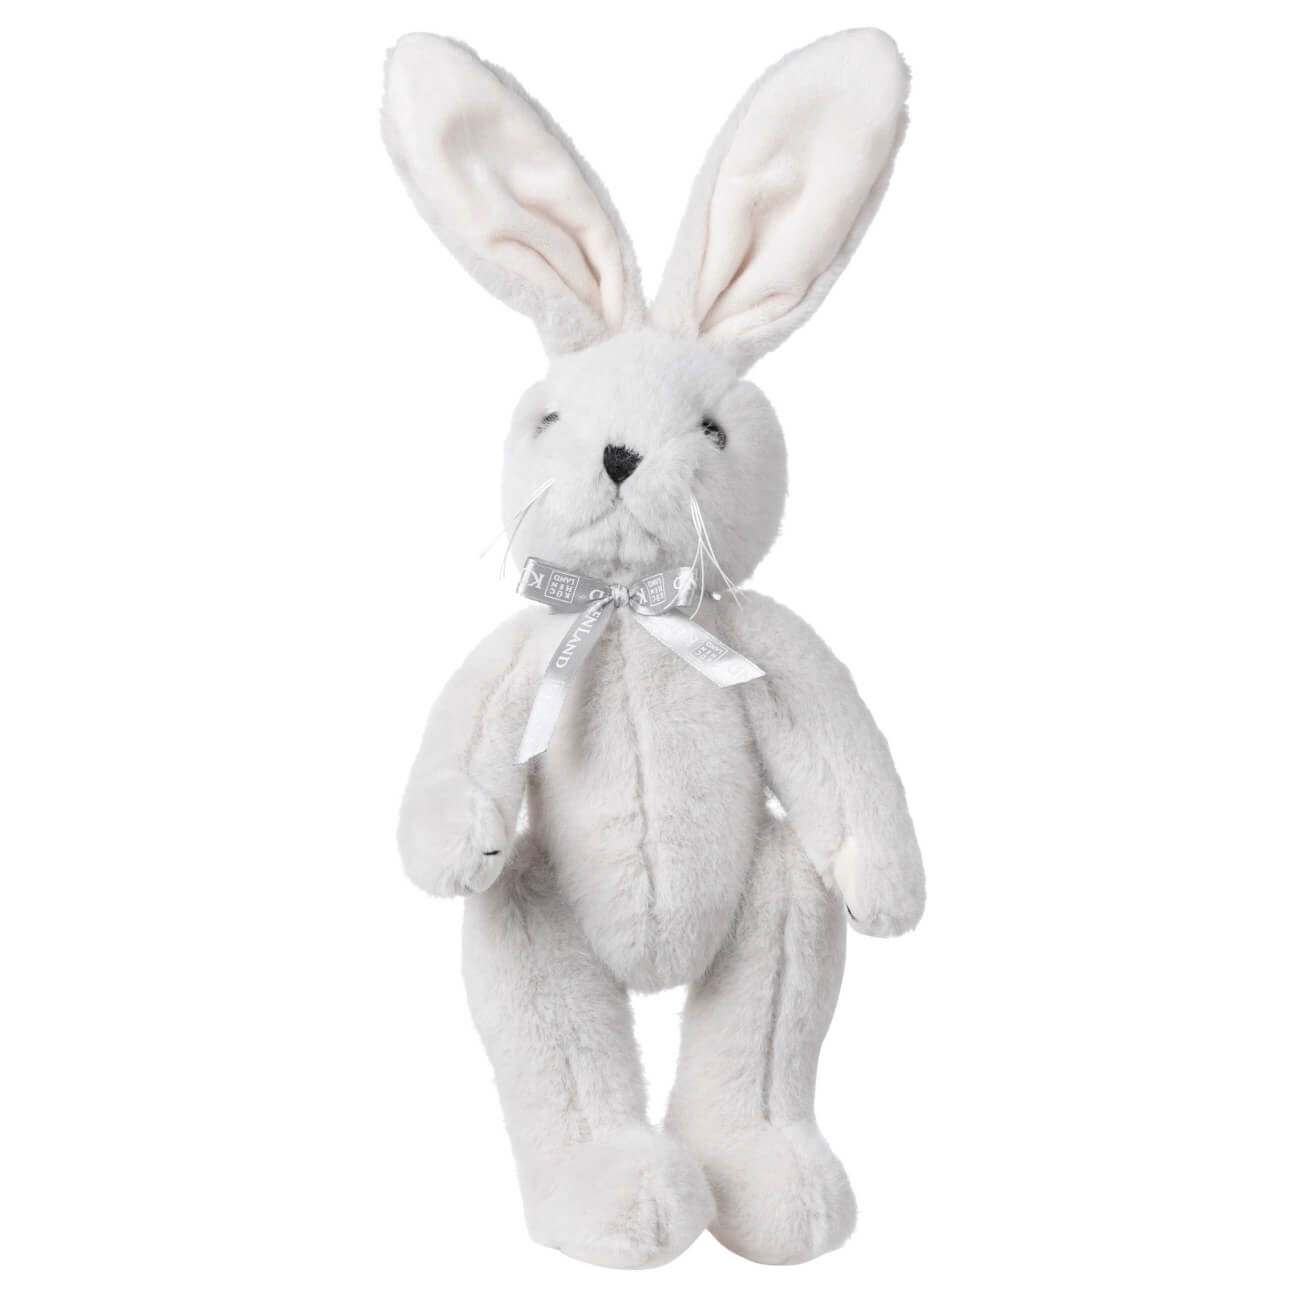 Игрушка, 30 см, мягкая, с подвижными лапами, полиэстер, светло-серая, Кролик, Rabbit toy мягкая игрушка little friend мишка в красном свитере